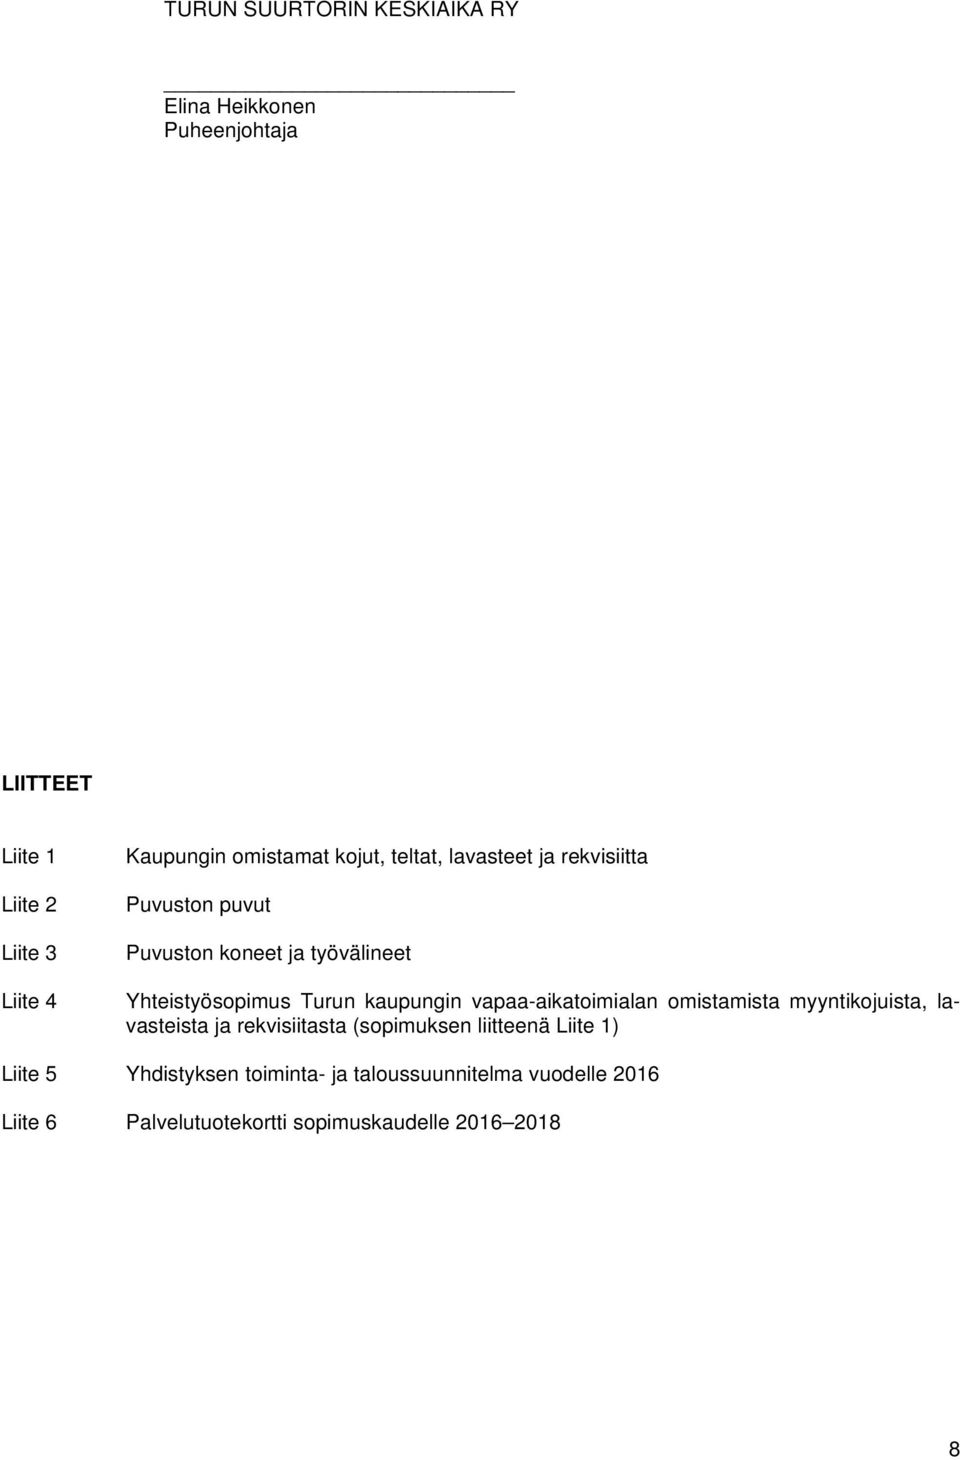 Turun kaupungin vapaa-aikatoimialan omistamista myyntikojuista, lavasteista ja rekvisiitasta (sopimuksen liitteenä